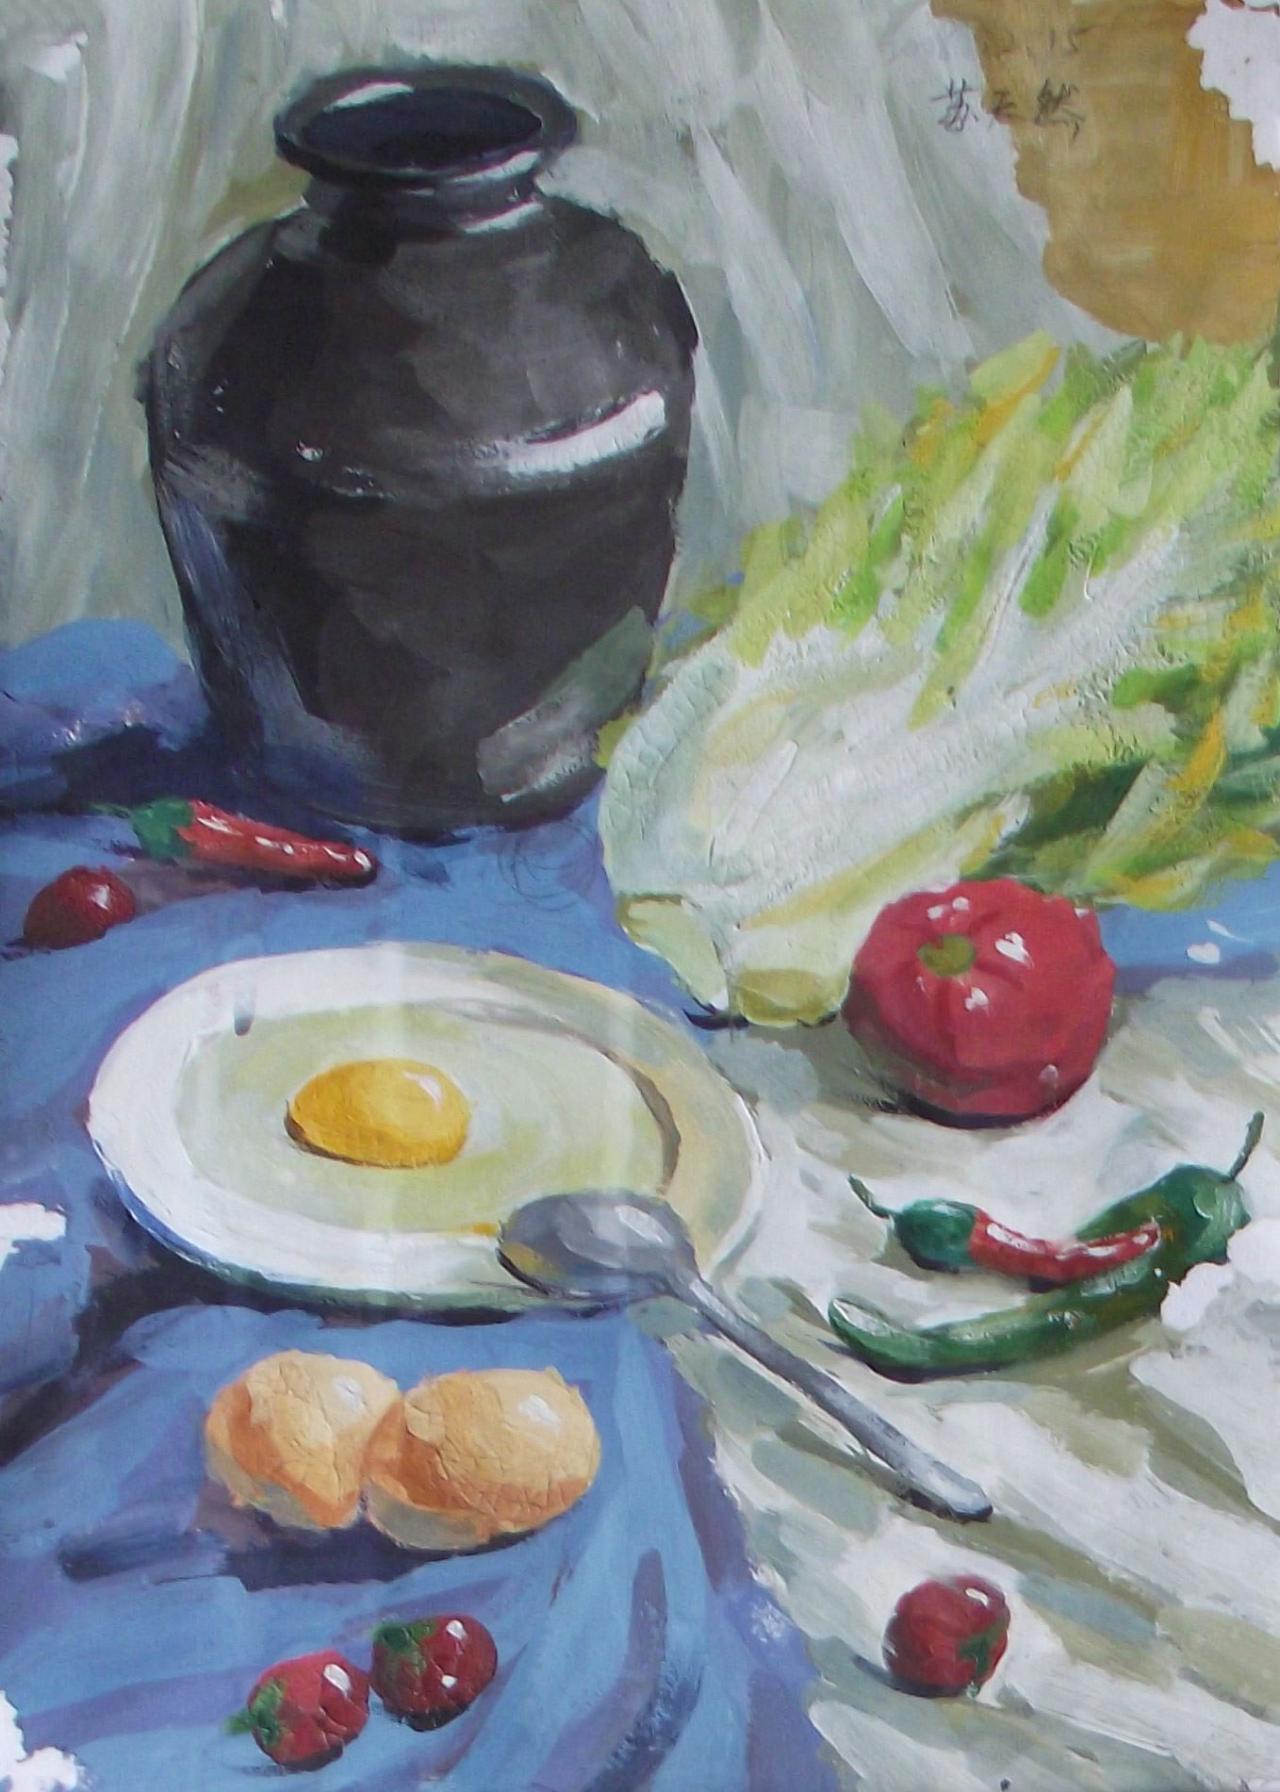 坛子、辣椒、盘子、白菜、蛋黄等静物水粉 苏天然画